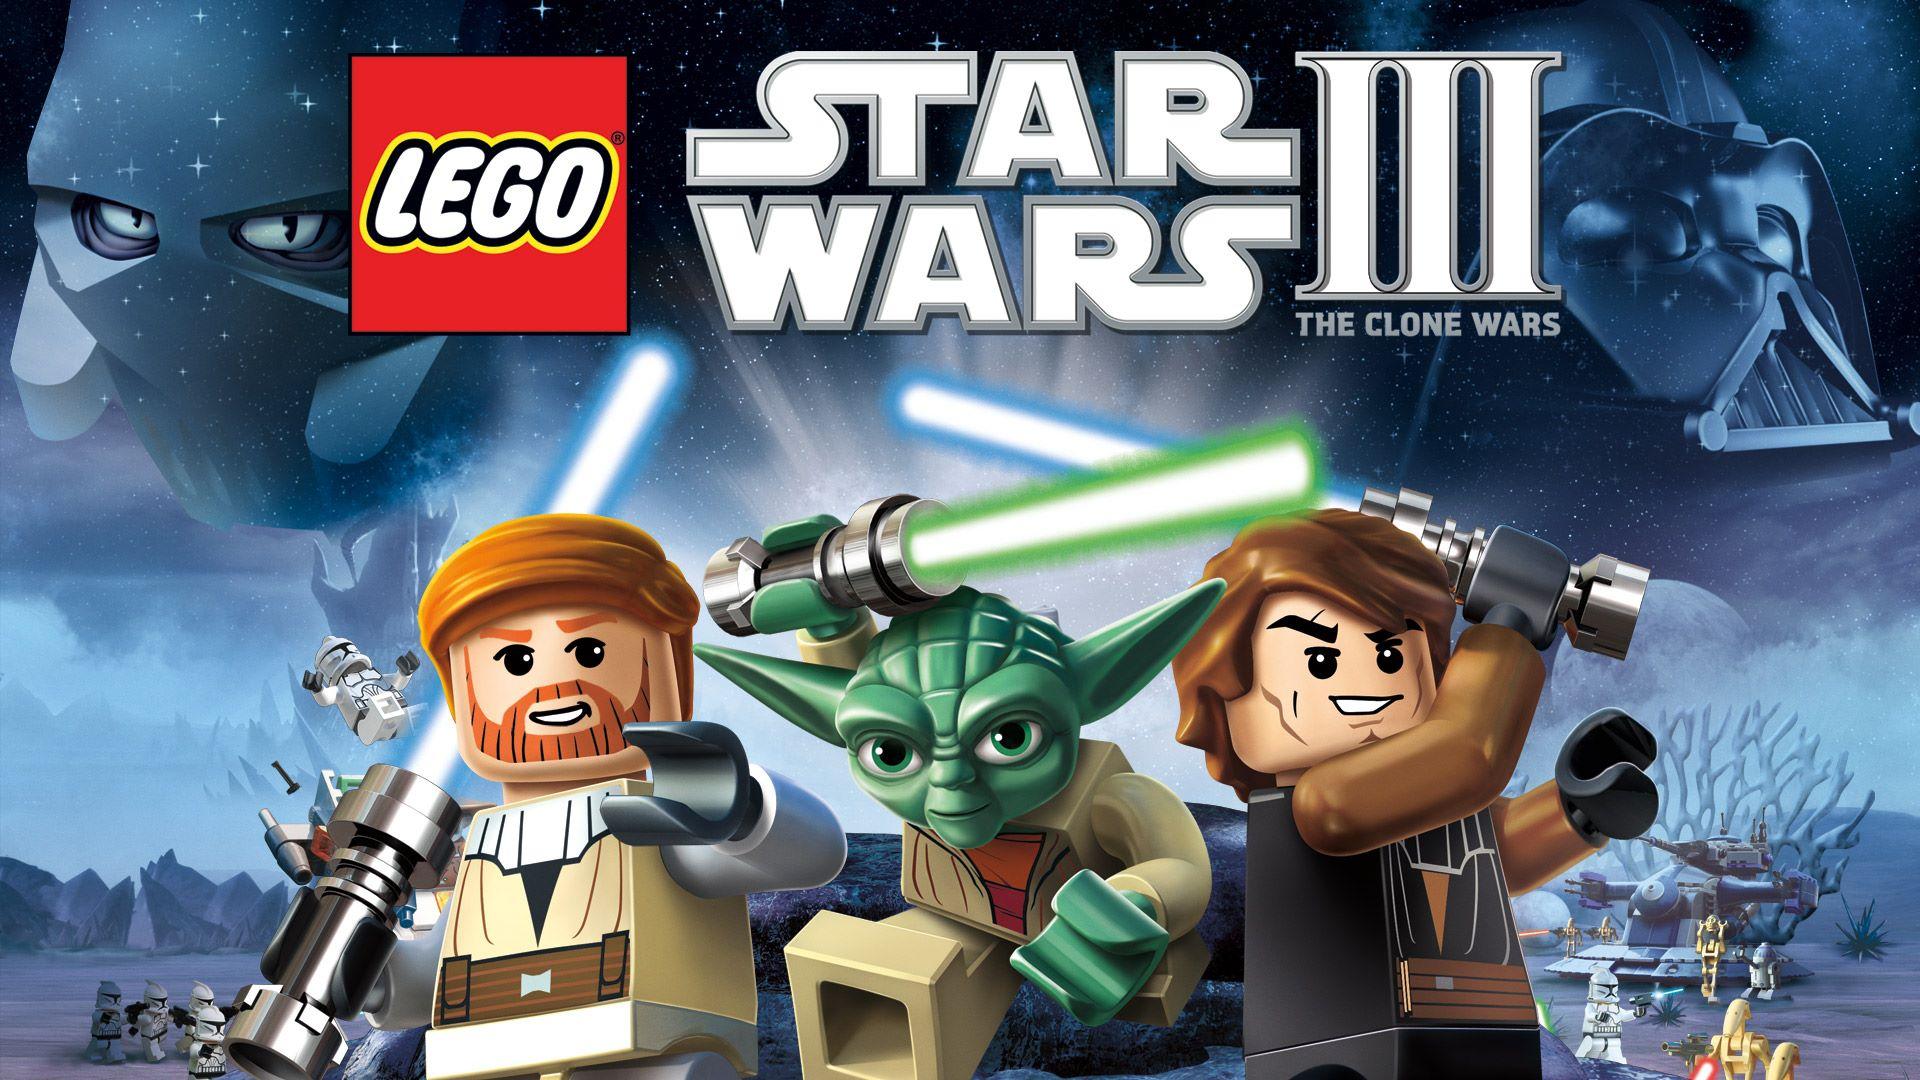 Buy LEGO Star Wars III